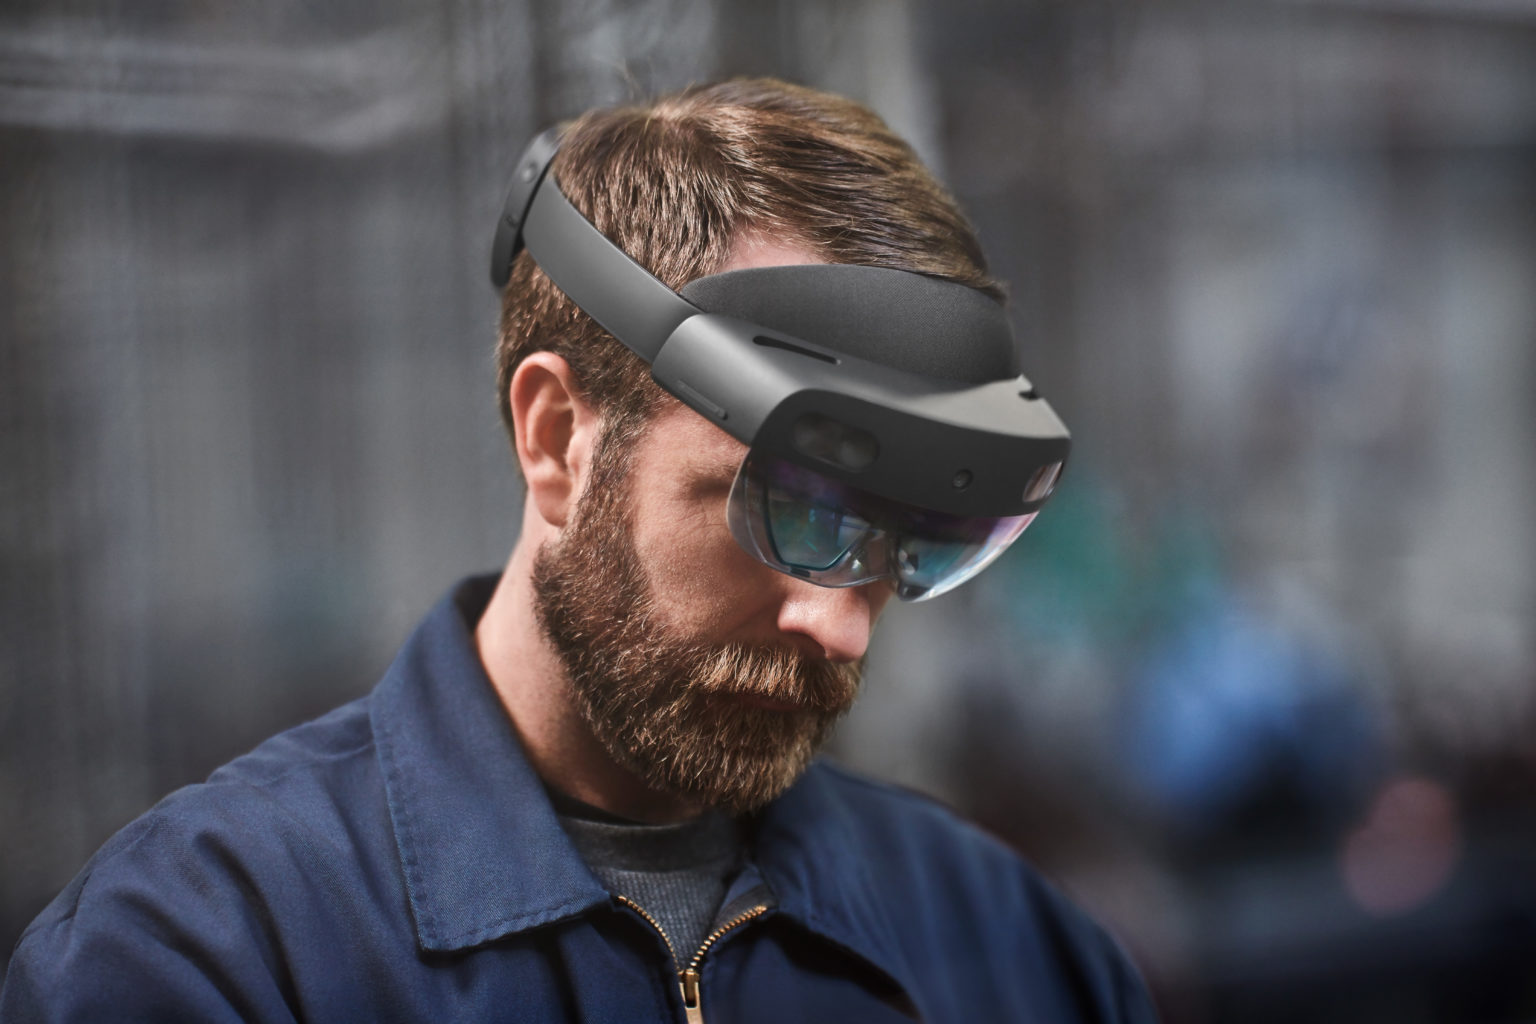 Man met baard draagt Microsoft HoloLens 2